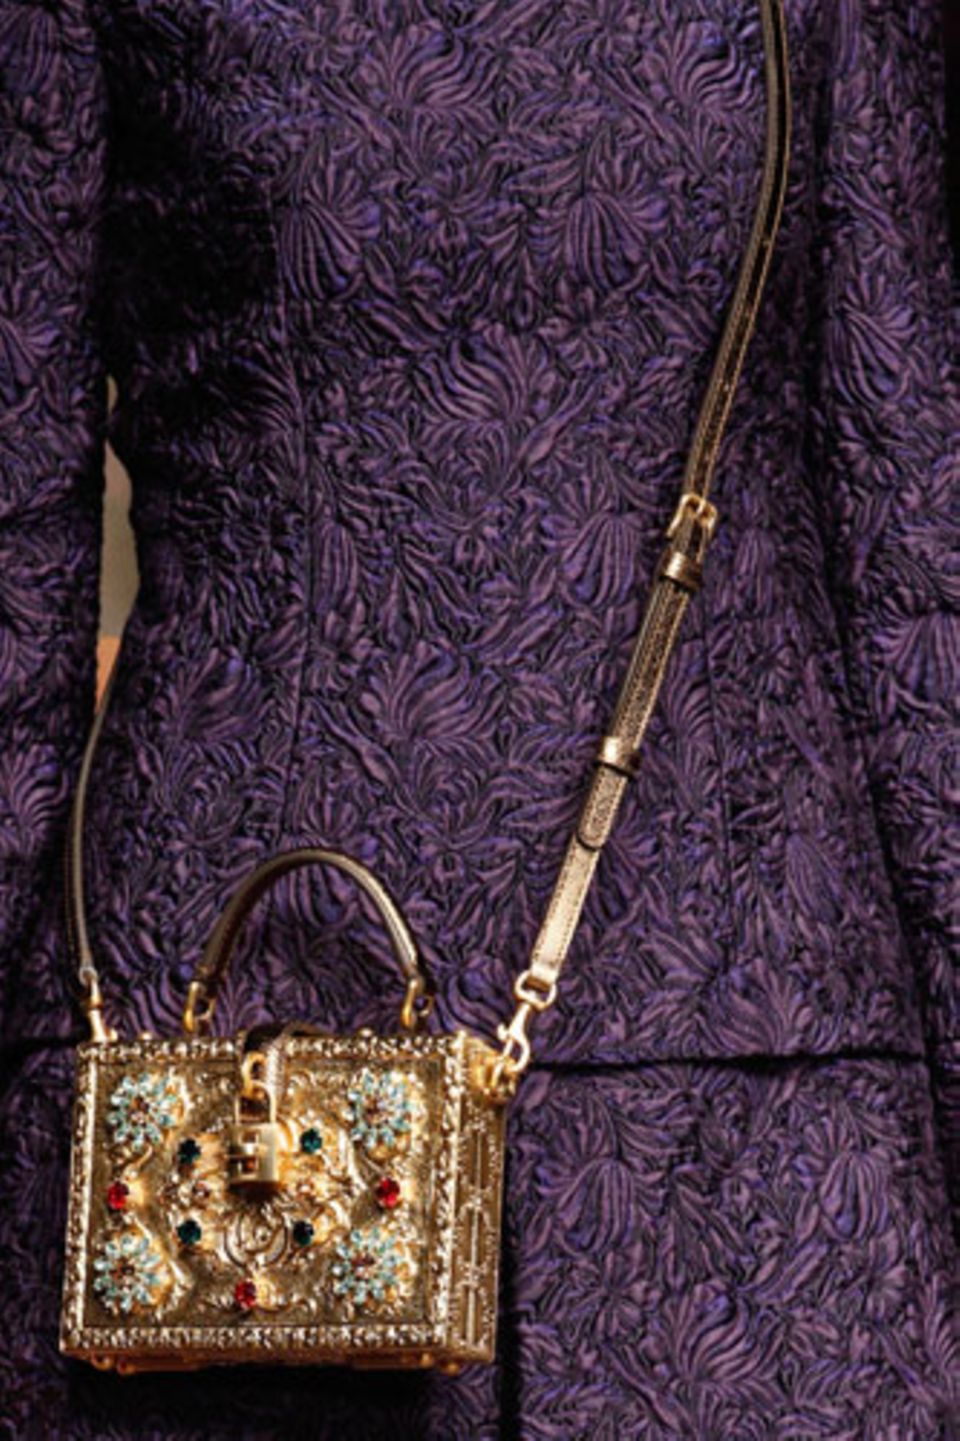 Ebenfalls bei Dolce & Gabbana: kastenförmige Schmucktaschen zum Umhängen. Solche Stücke lassen auch schlichte Outfits strahlen.